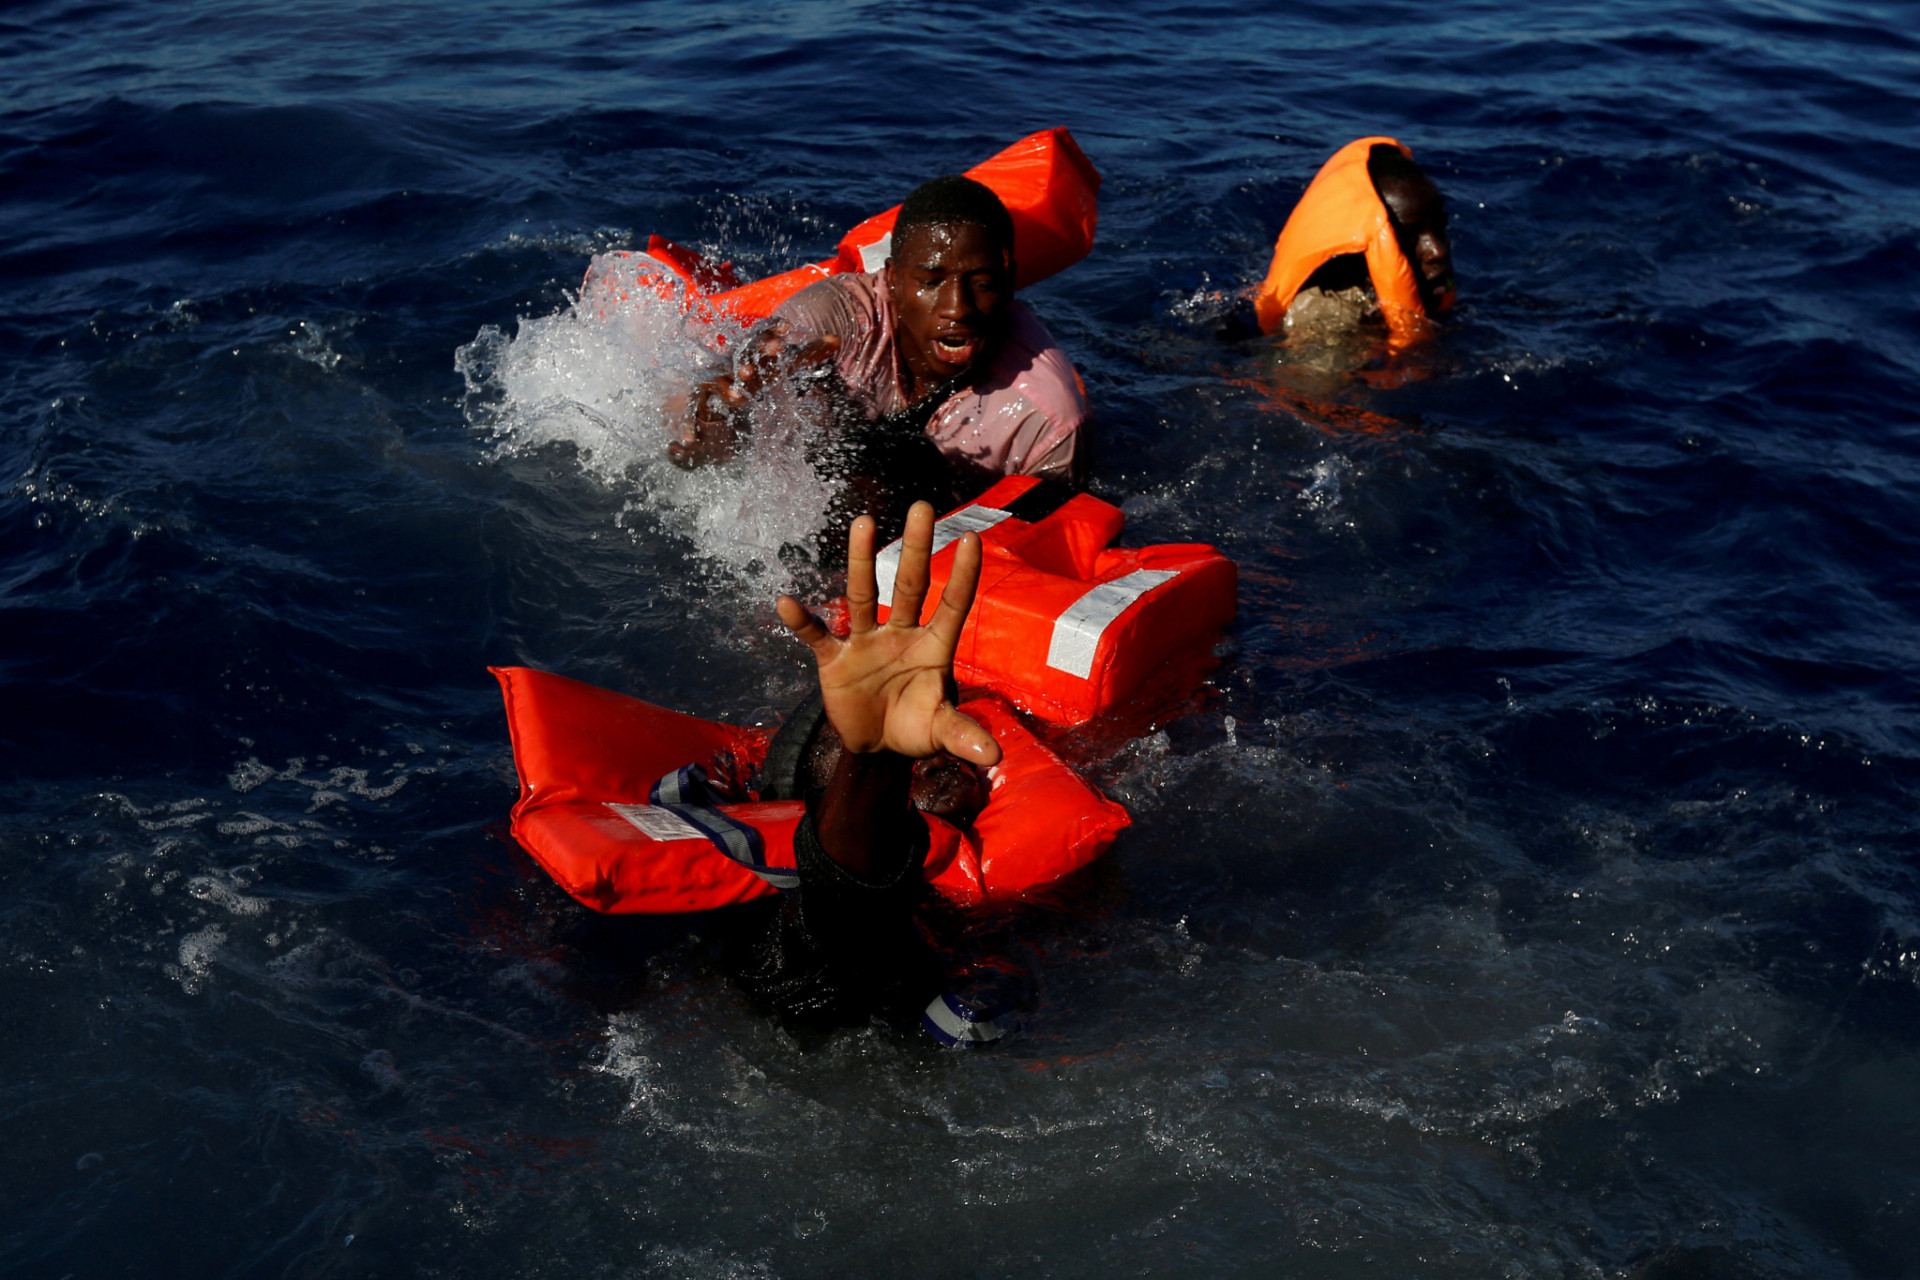 Migranti sa pokúšajú udržať sa na hladine po páde z gumovej záchrannej lode počas záchrannej operácie zo strany maltskej mimovládnej organizácie Migrant offshore aid station (MOAS) v centrálnom Stredozemí v medzinárodných vodách asi 15 námorných míľ od pobrežia Zawiya v Líbyi 14. apríla , 2017. Všetkých 134 subsaharských migrantov prežilo a bolo zachránených. 